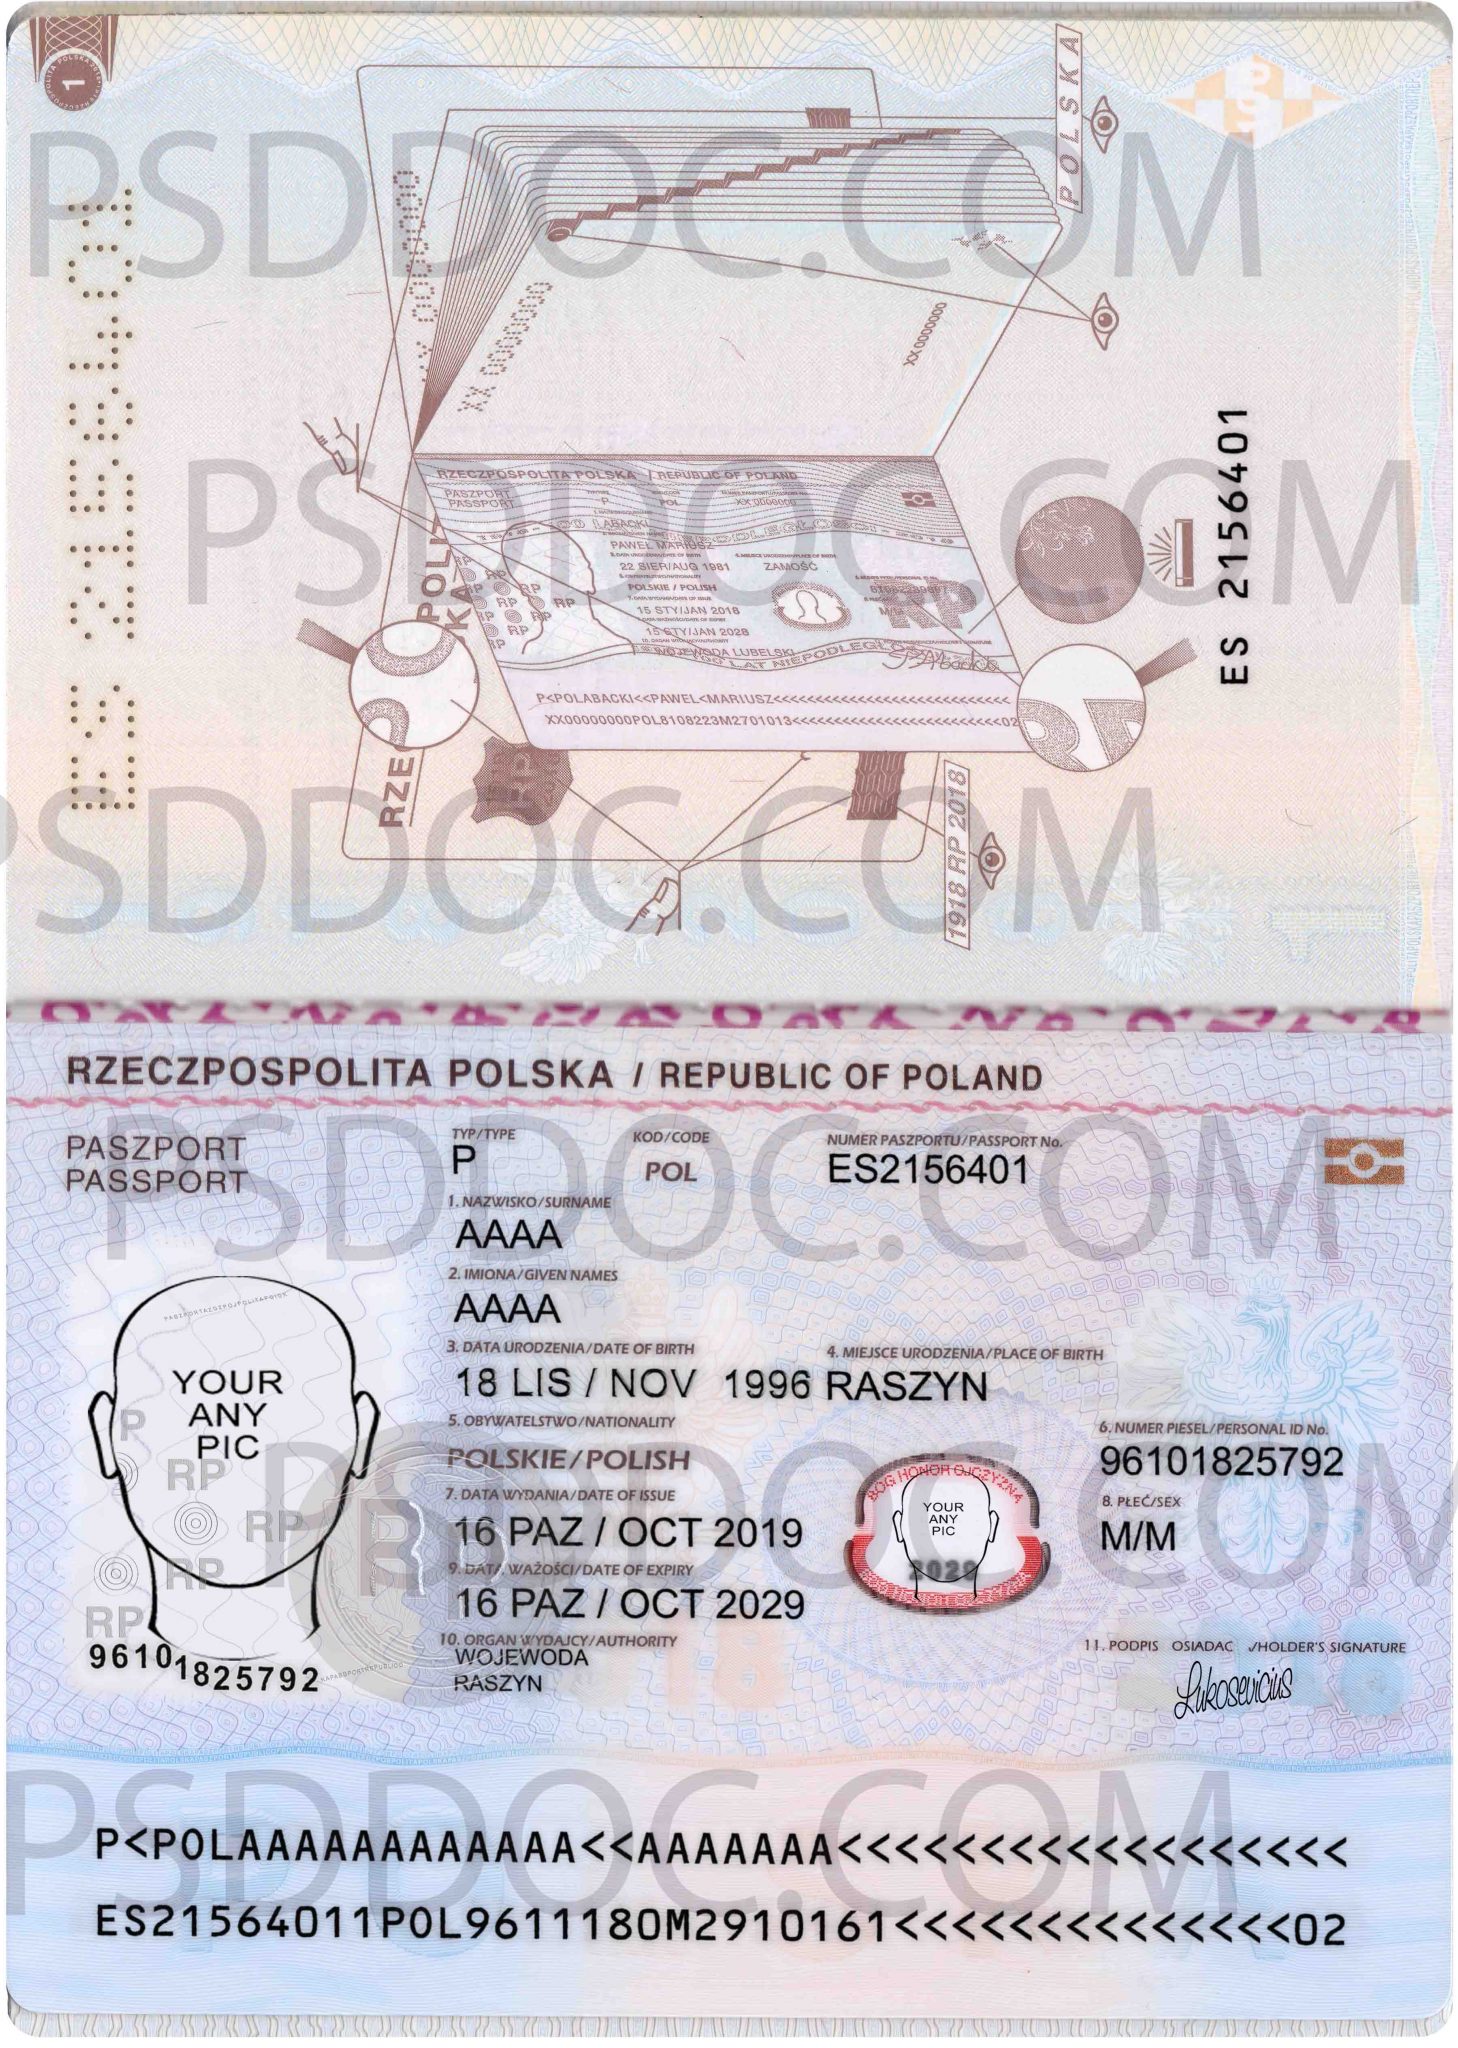 Poland Passport 2018 Psd Psd Store 4732